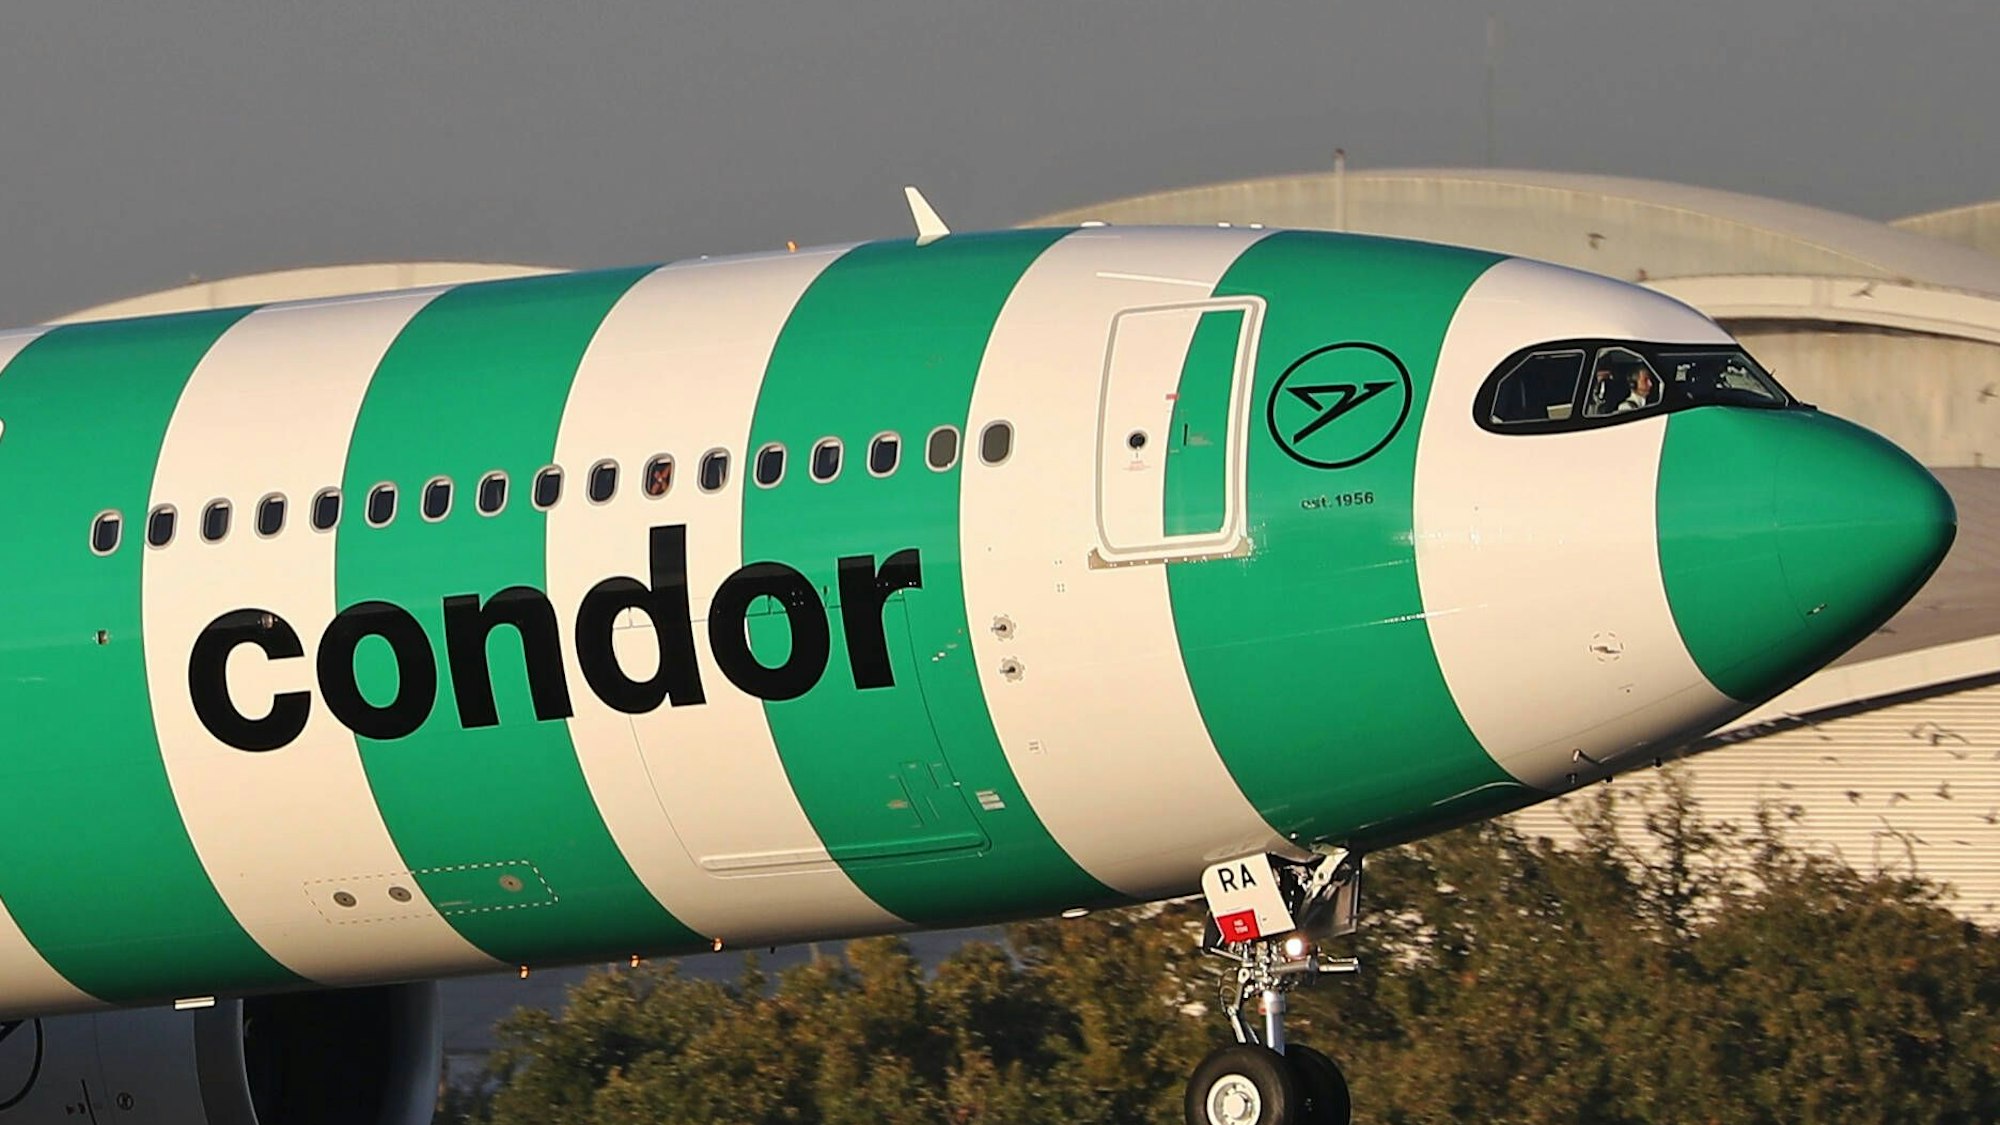 Ein Airbus A330 der deutschen Fluggesellschaft Condor hat einen Flug nach Frankfurt am Main wegen eines medizinischen Notfalls plötzlich abbrechen müssen. Ein Passagier starb kurz darauf. (Symbolbild)